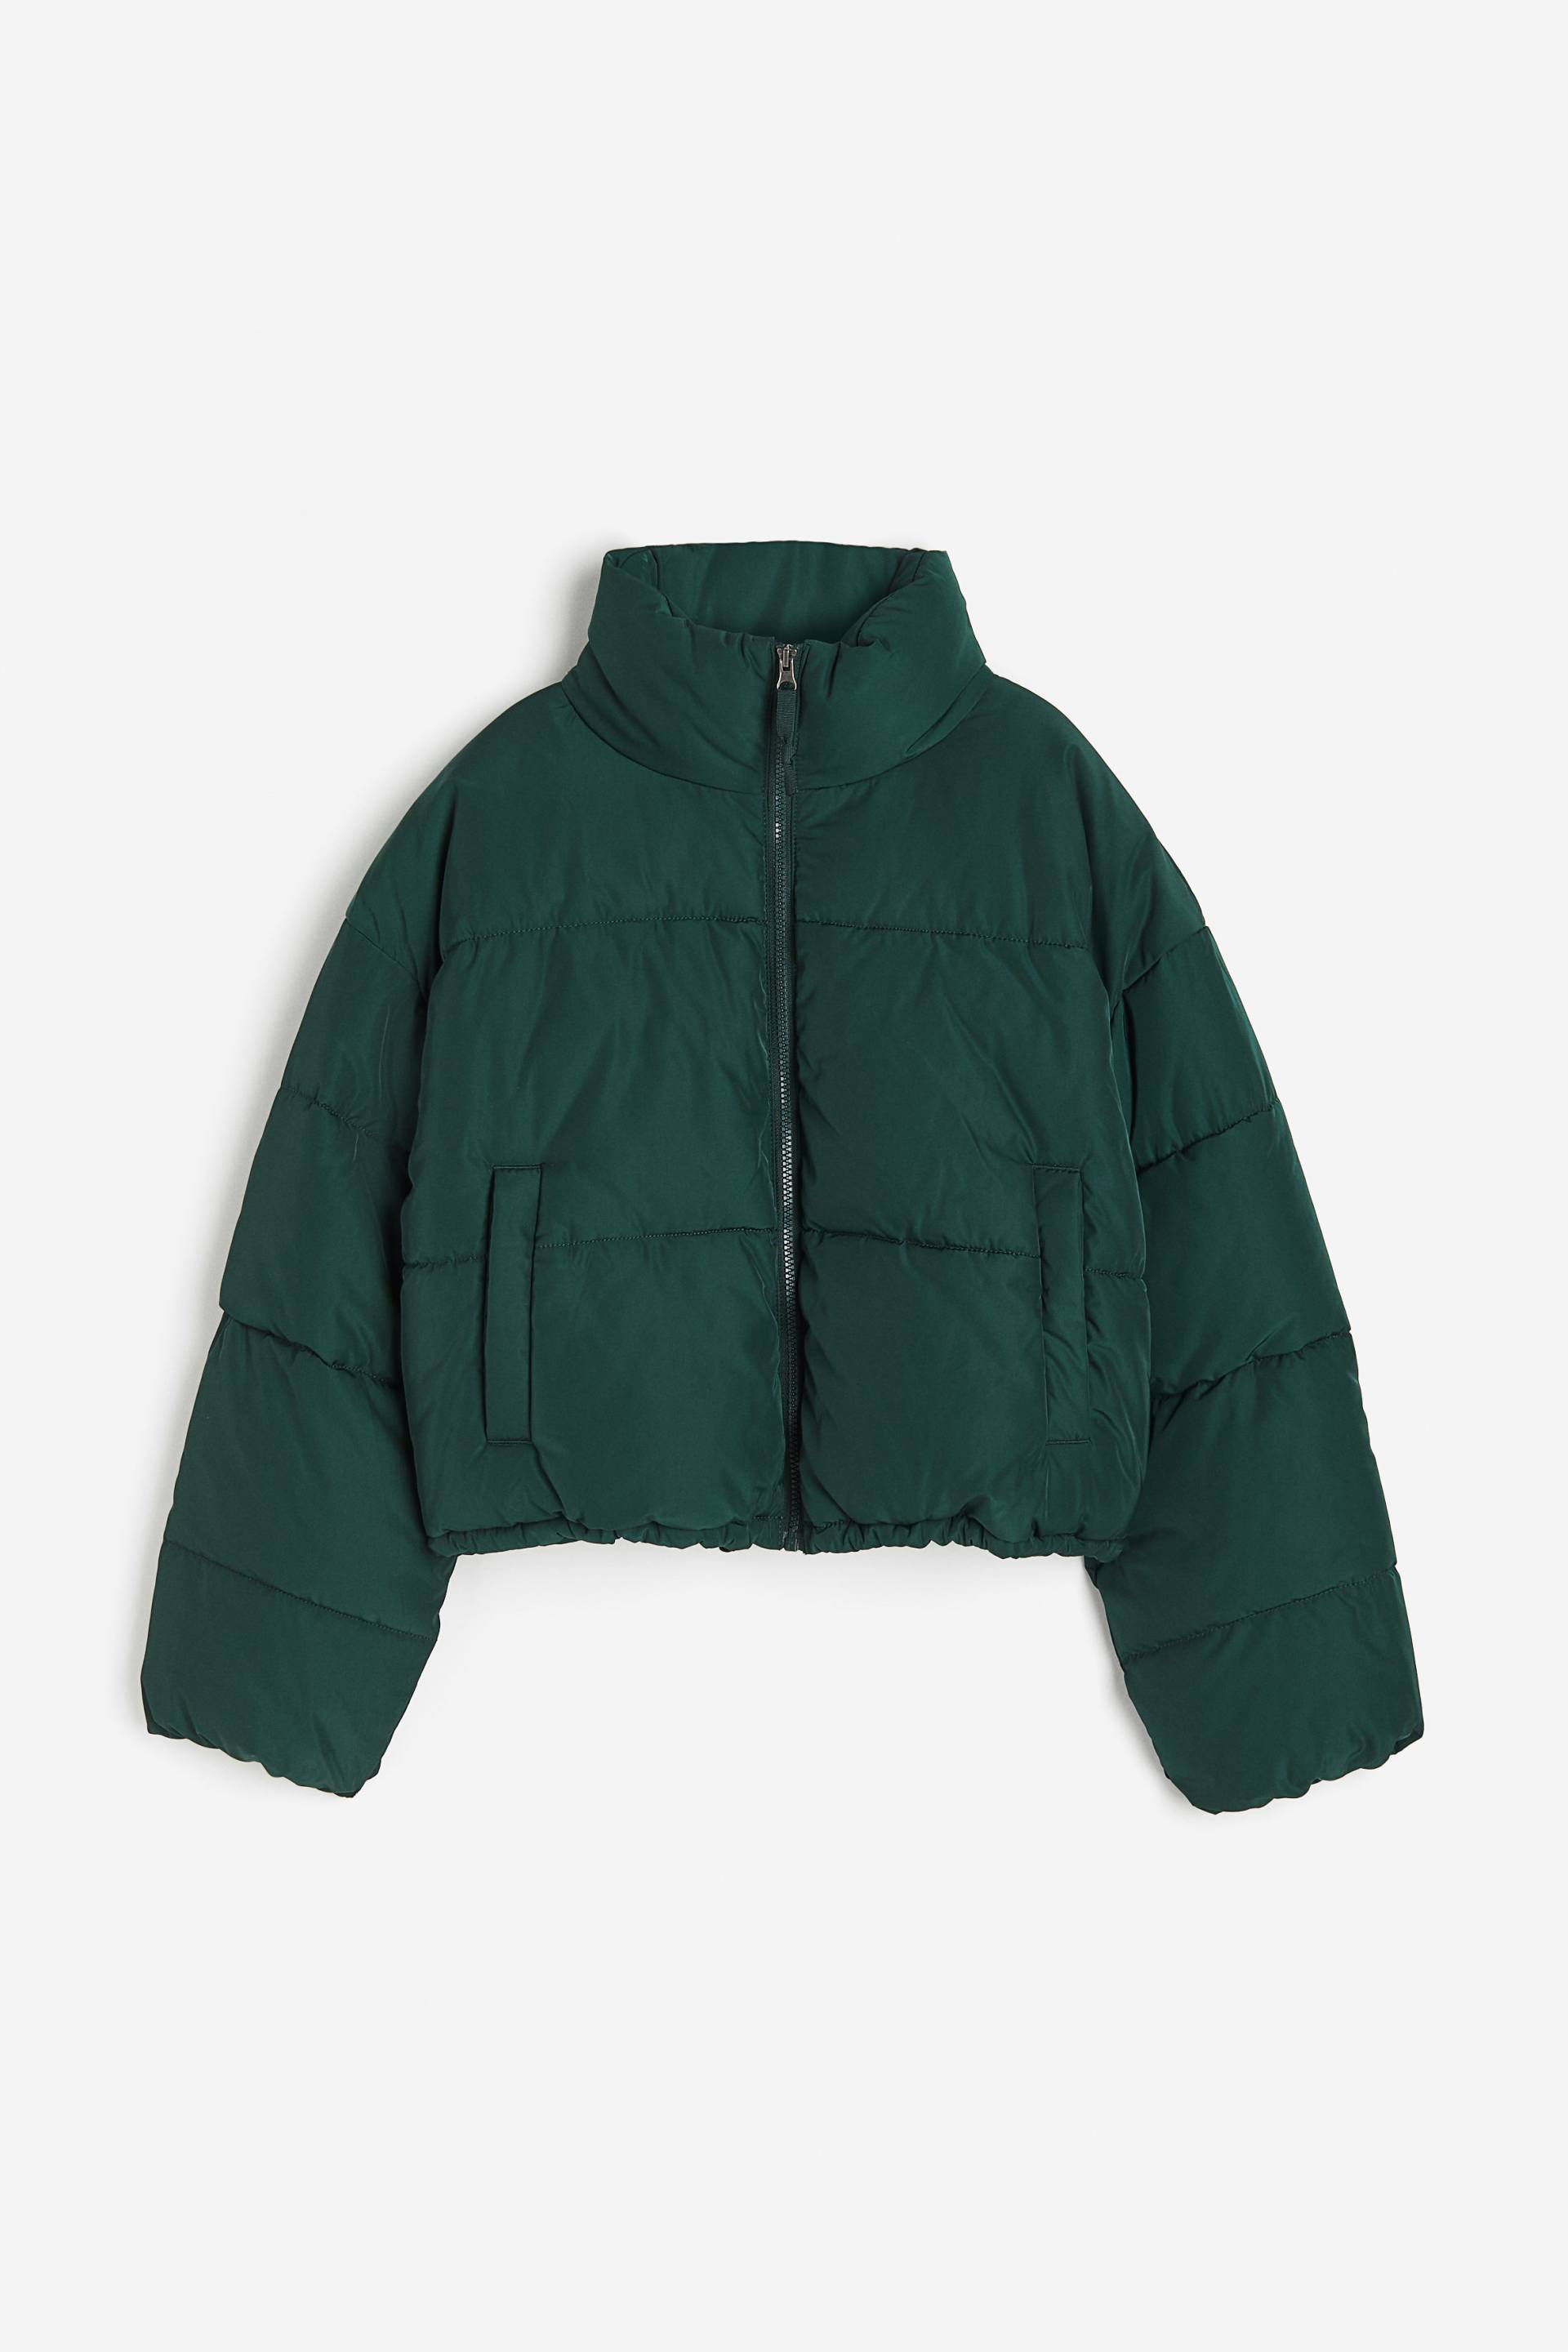 H&M Puffer Jacket Dunkelgrün, Jacken in Größe XXS. Farbe: Dark green von H&M